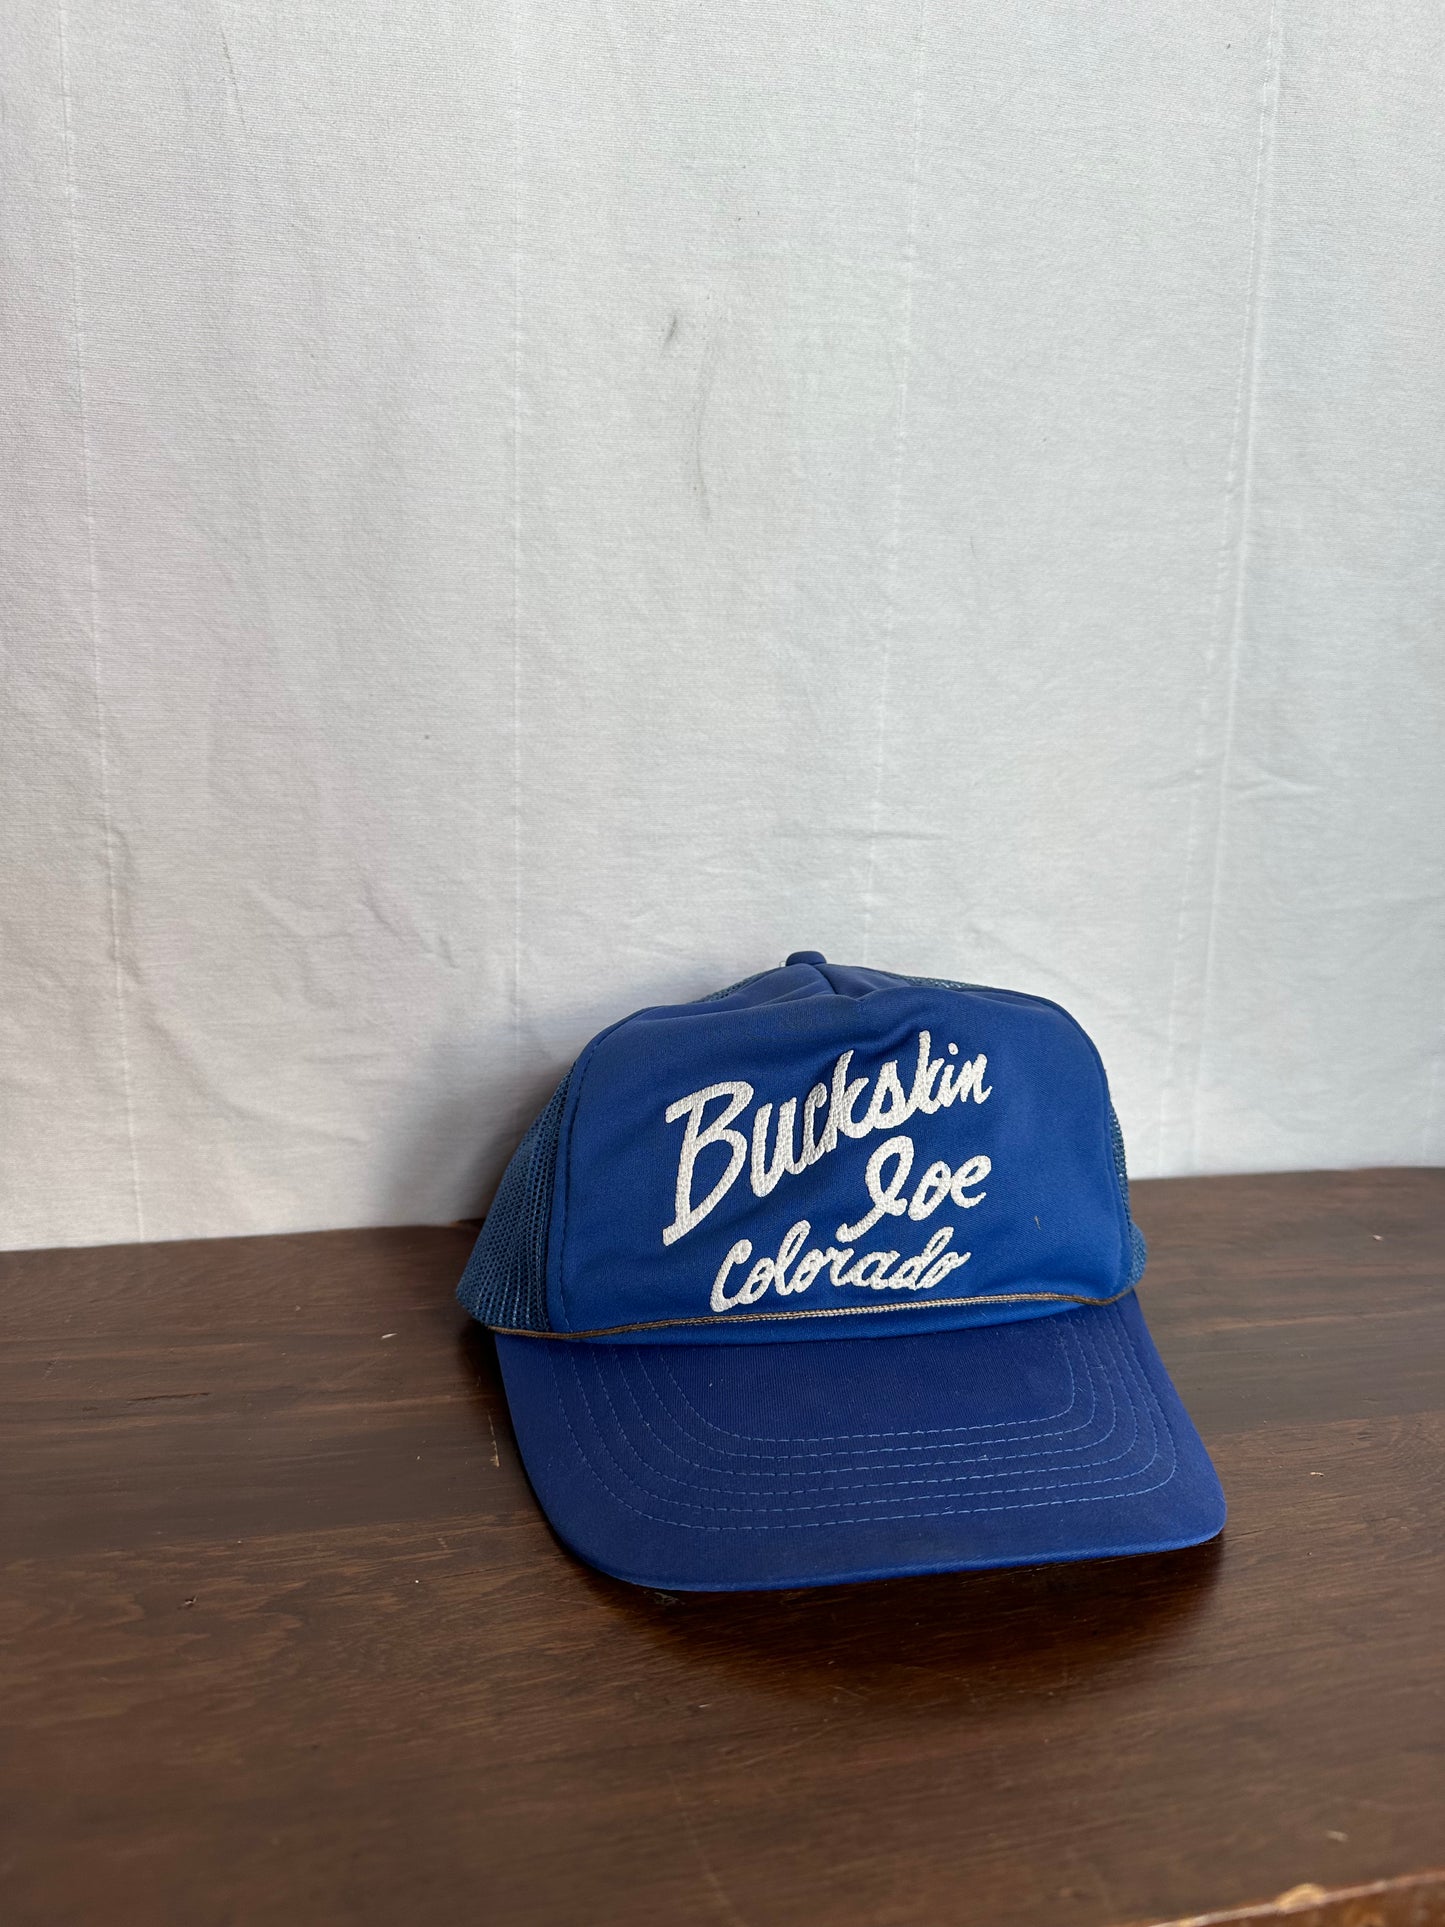 Buckskin Joe Colorado hat